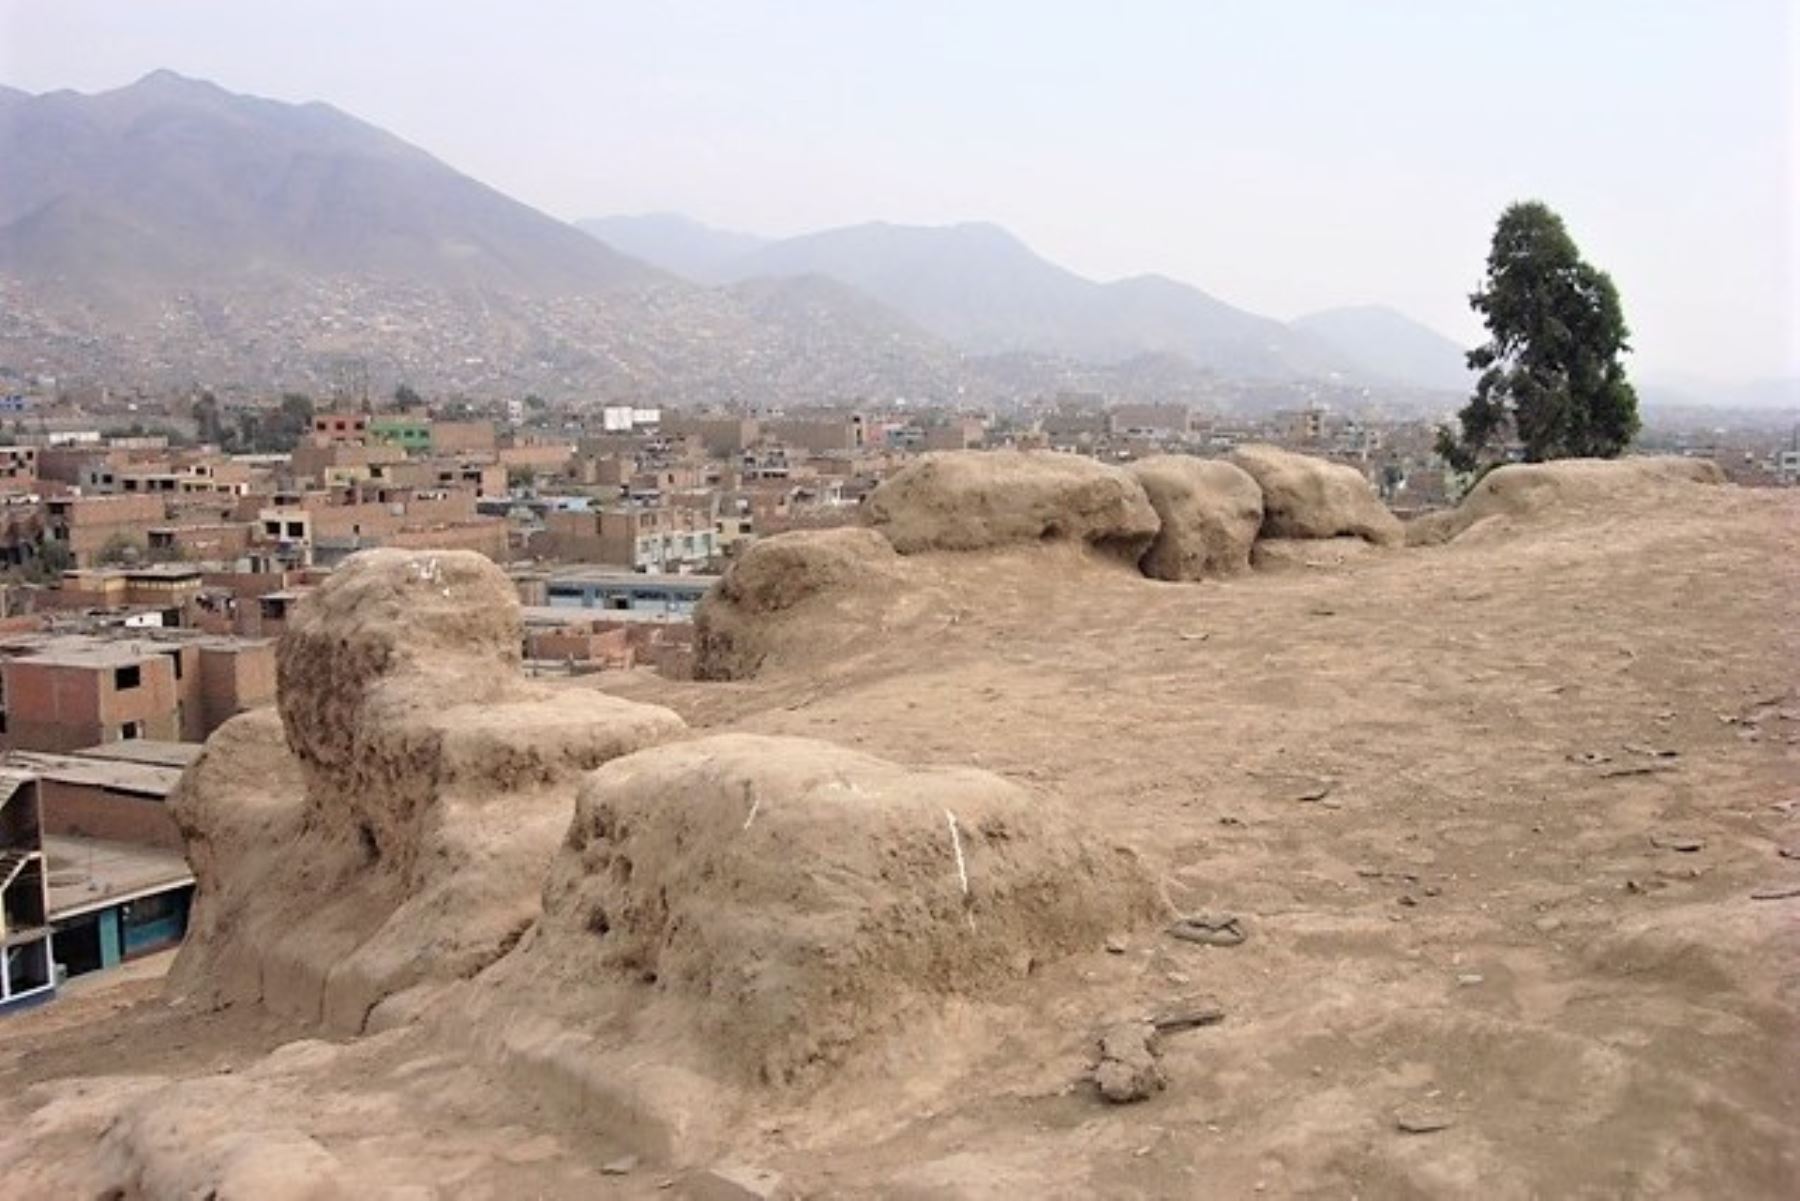 Vista del sitio arqueológico Collique Bajo sector 1 en el distrito de Comas. Foto: Blog Historia en Fotos-Perú/Cortesía.